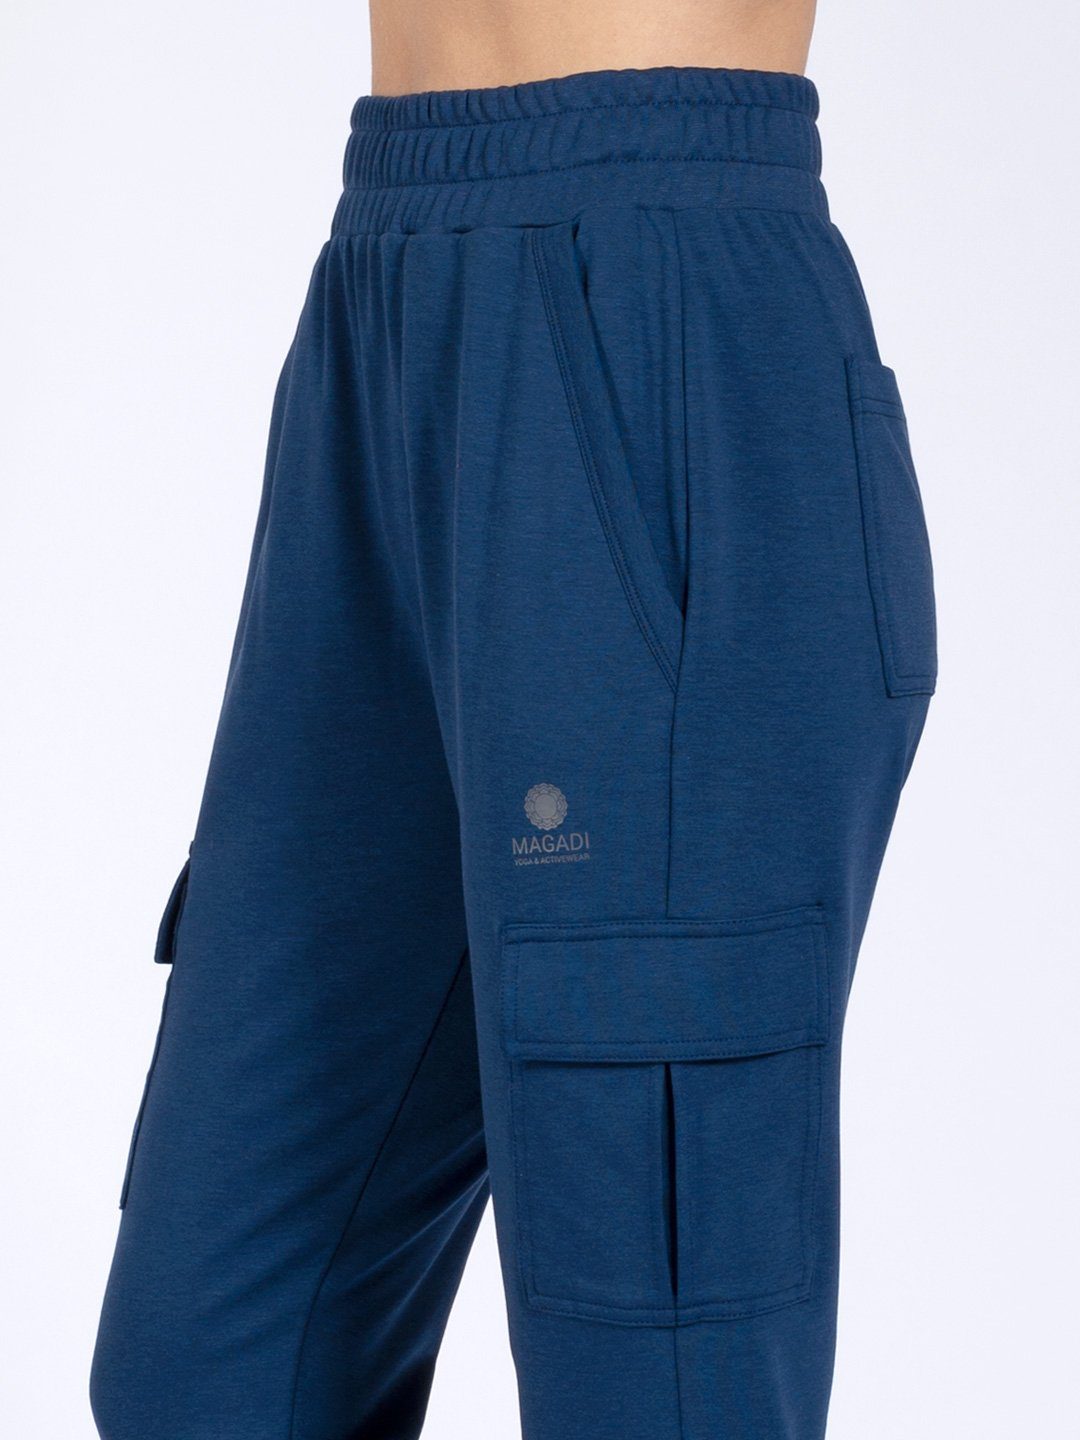 mit hautsympathischem Magadi Cargotaschen Yogahose blau aus Lucy Naturmaterial